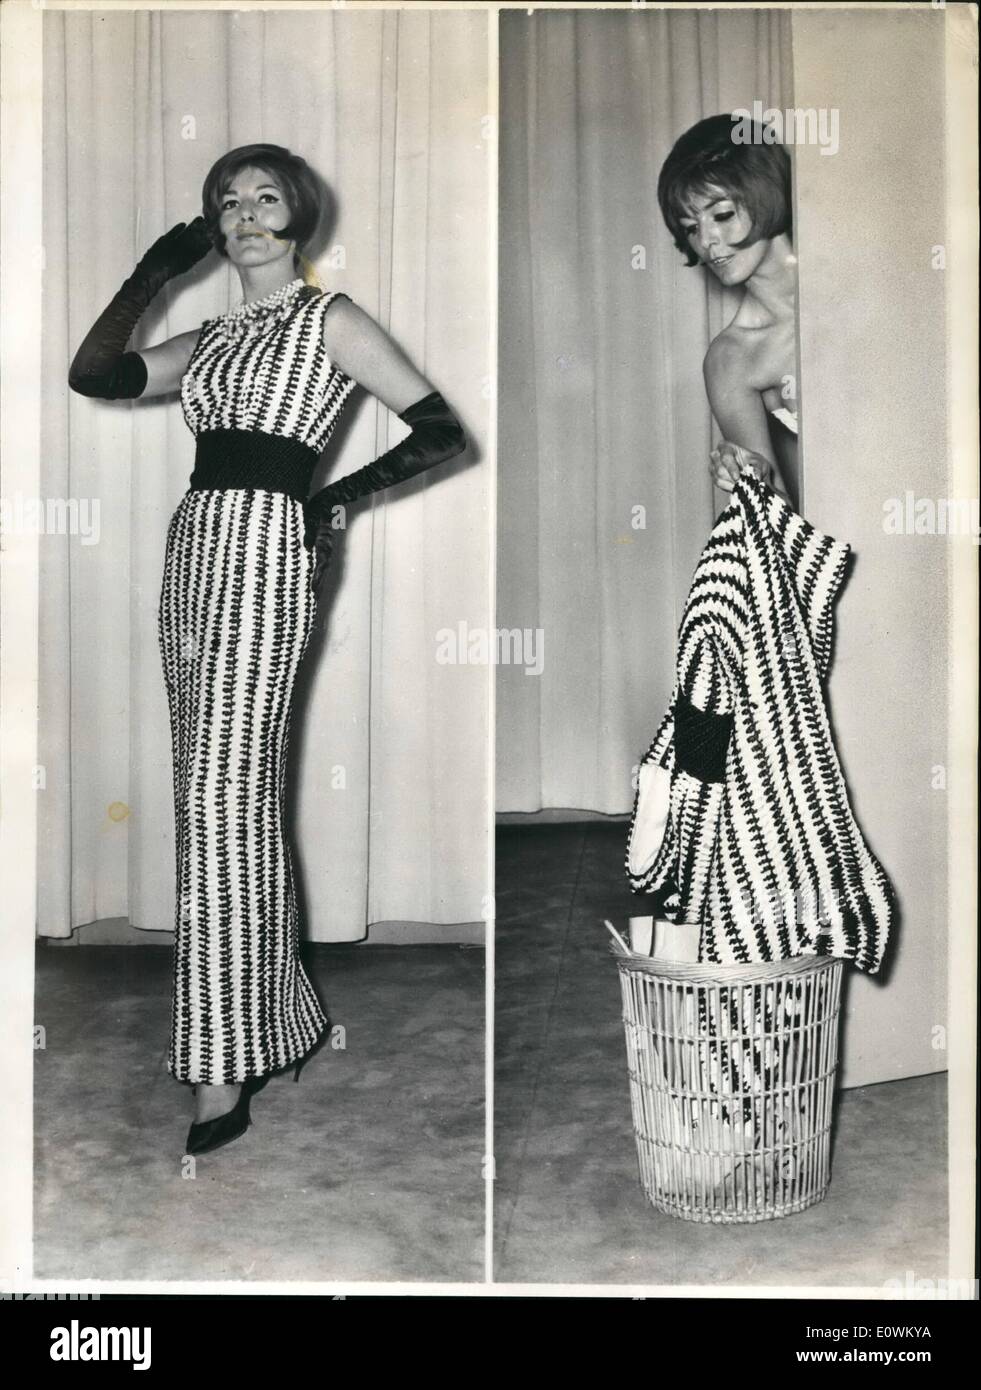 5. Mai 1963 - Dies ist ein Abend Kleid. Deutscher Ursprung Modedesigner wirst Yorn in Paris eröffnet am Abend Markt werfen Edelsteine die nach einem Einsatz Cam werden verbrannt oder '' geworfen '' einen Weg in den Papierkorb. Es ist wahr, dass diese Kleider aus Papier-Zeichenfolge bestehen. Foto zeigt '' mein Kleid... Ach, ich nur warf ihn weg. Stockfoto